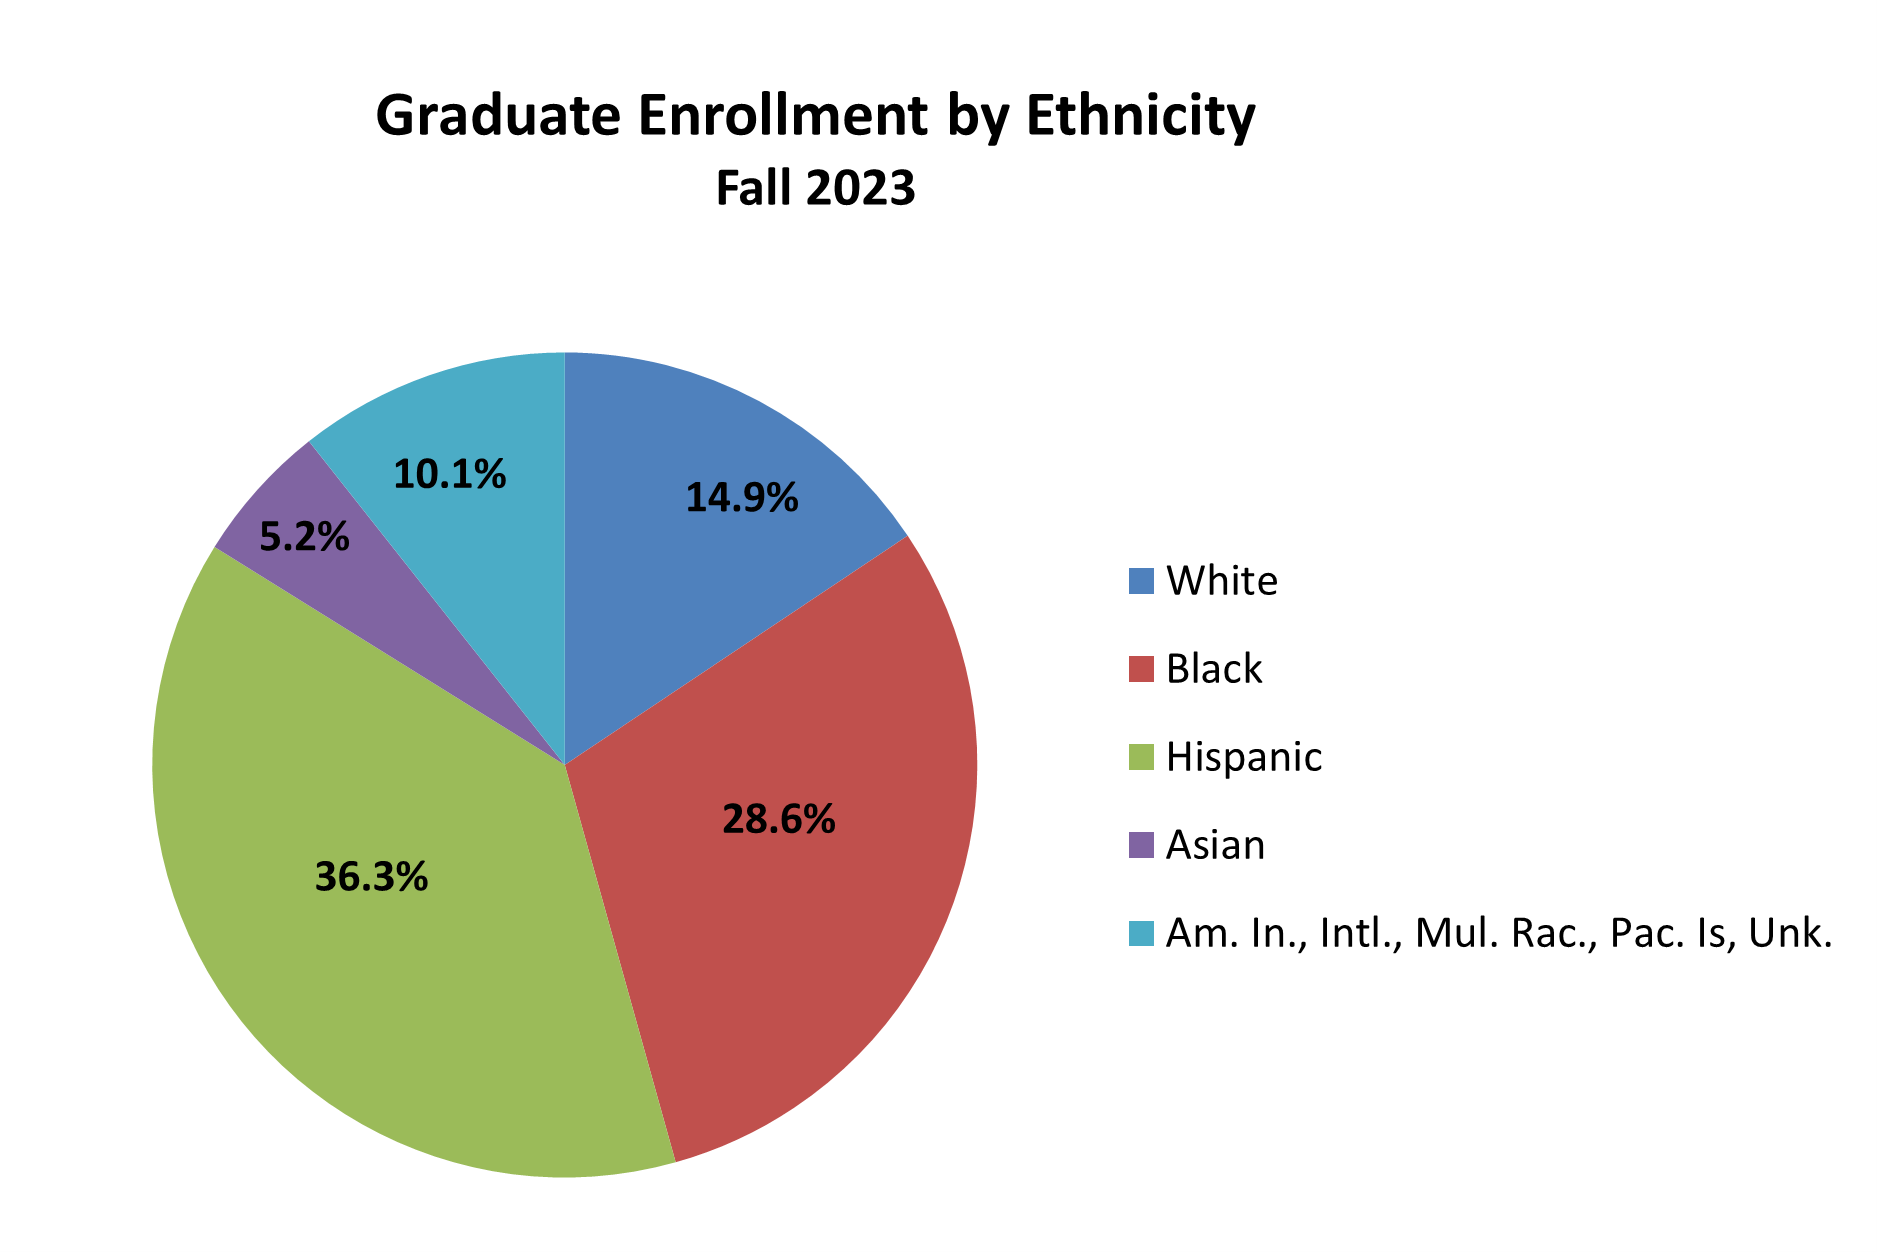 Graduate enrollment by ethnicity pie chart